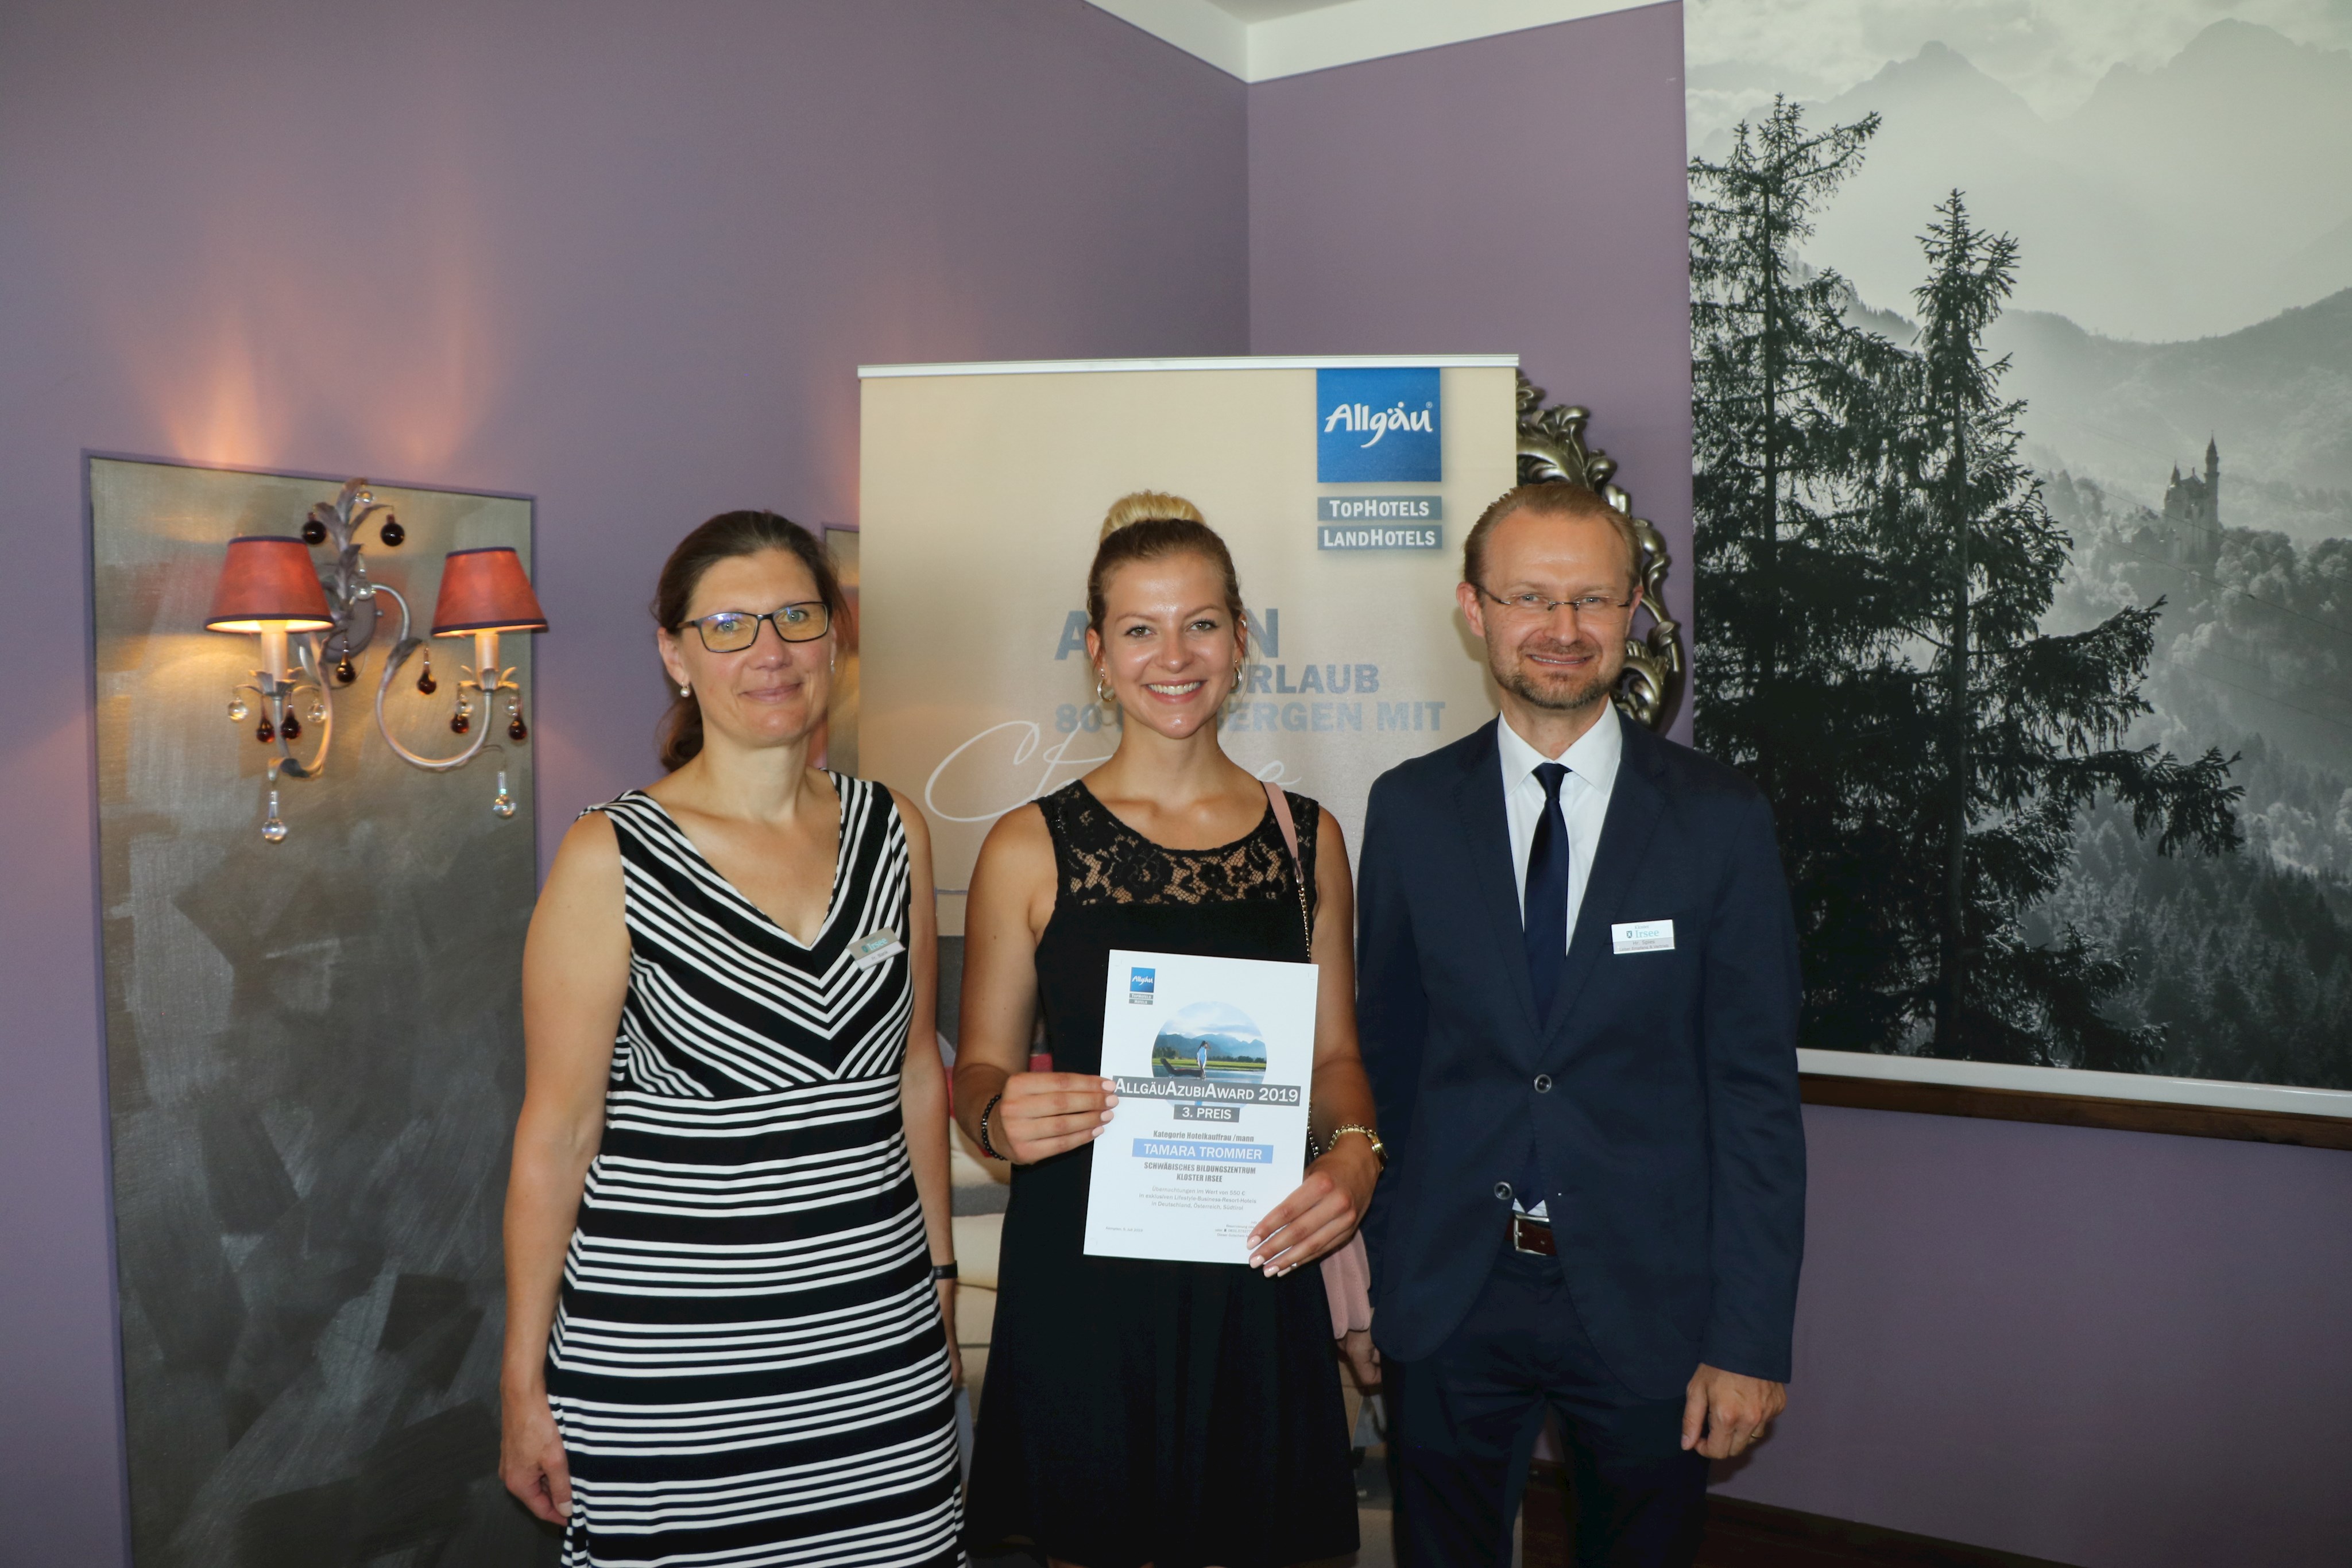 Azubi aus Kloster Irsee geehrt - Tamara Trommer als Hotelkauffrau des Schwäbischen Bildungszentrums ausgezeichnet.